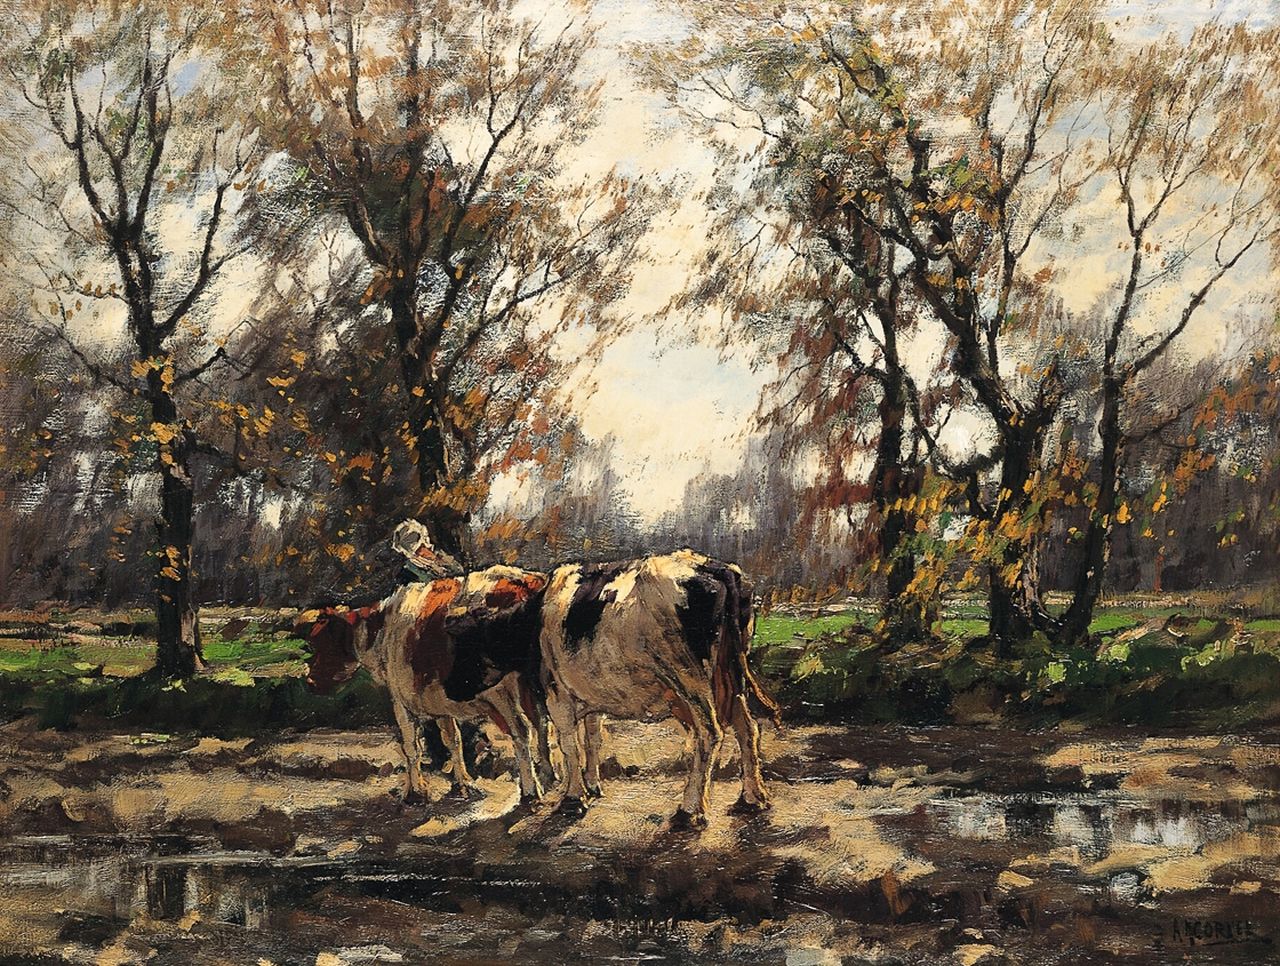 Gorter A.M.  | 'Arnold' Marc Gorter, Melkmeisje met koeien na een herfstbui, olieverf op doek 75,0 x 100,5 cm, gesigneerd rechtsonder